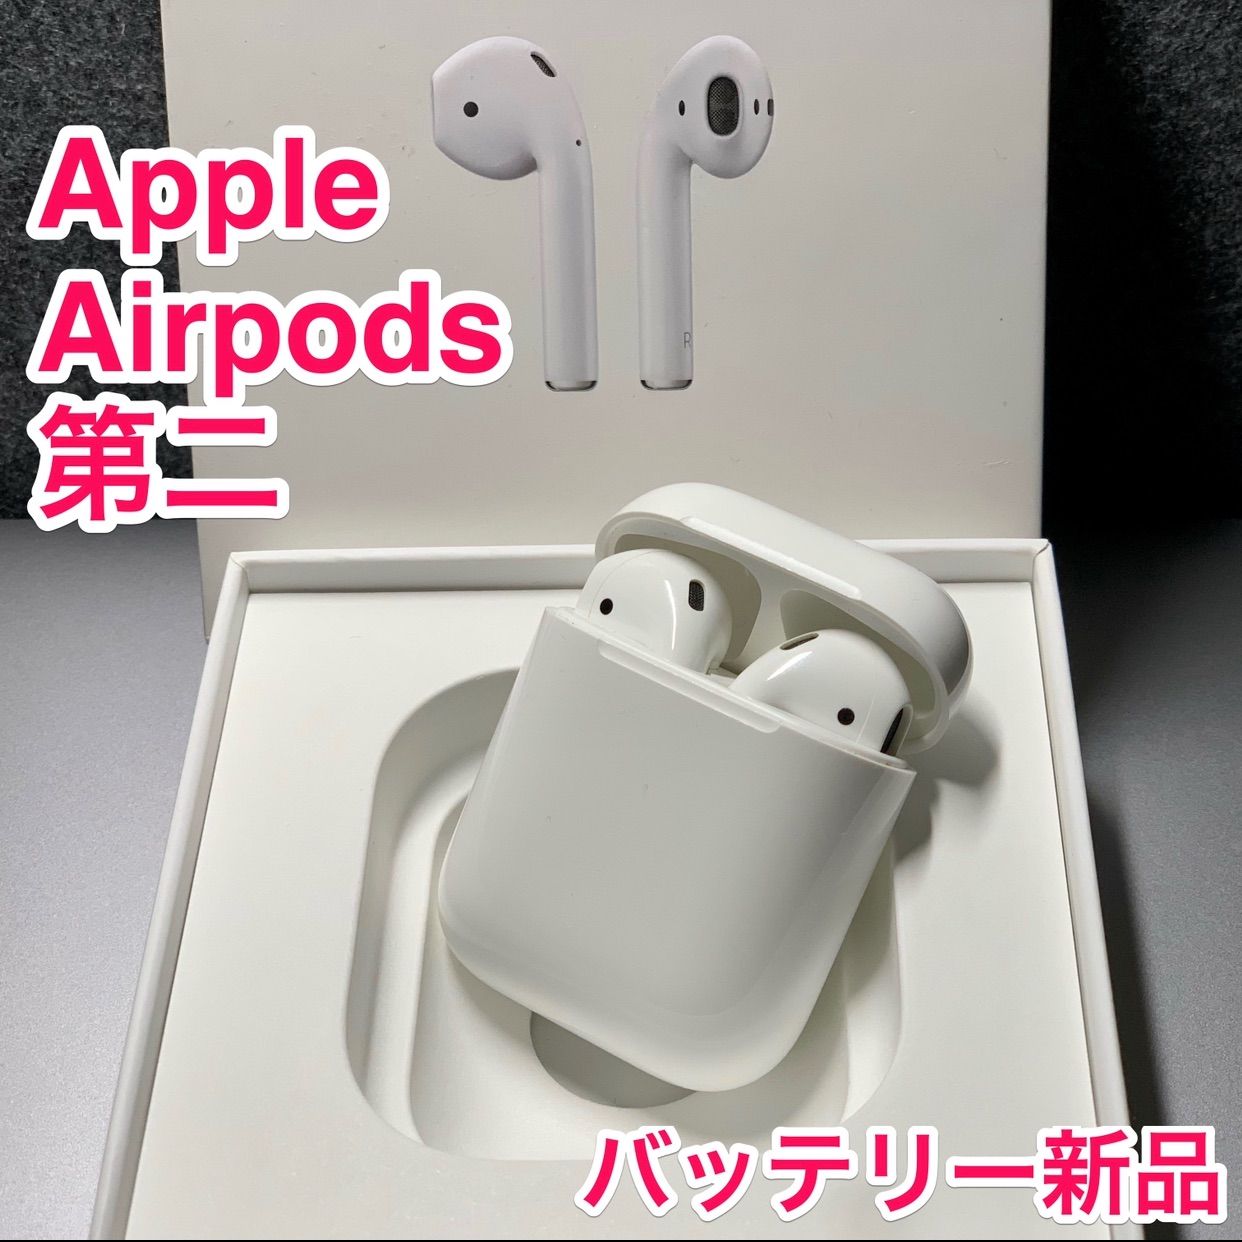 【価格買取】新品 Apple AirPods 第2世代 イヤホン